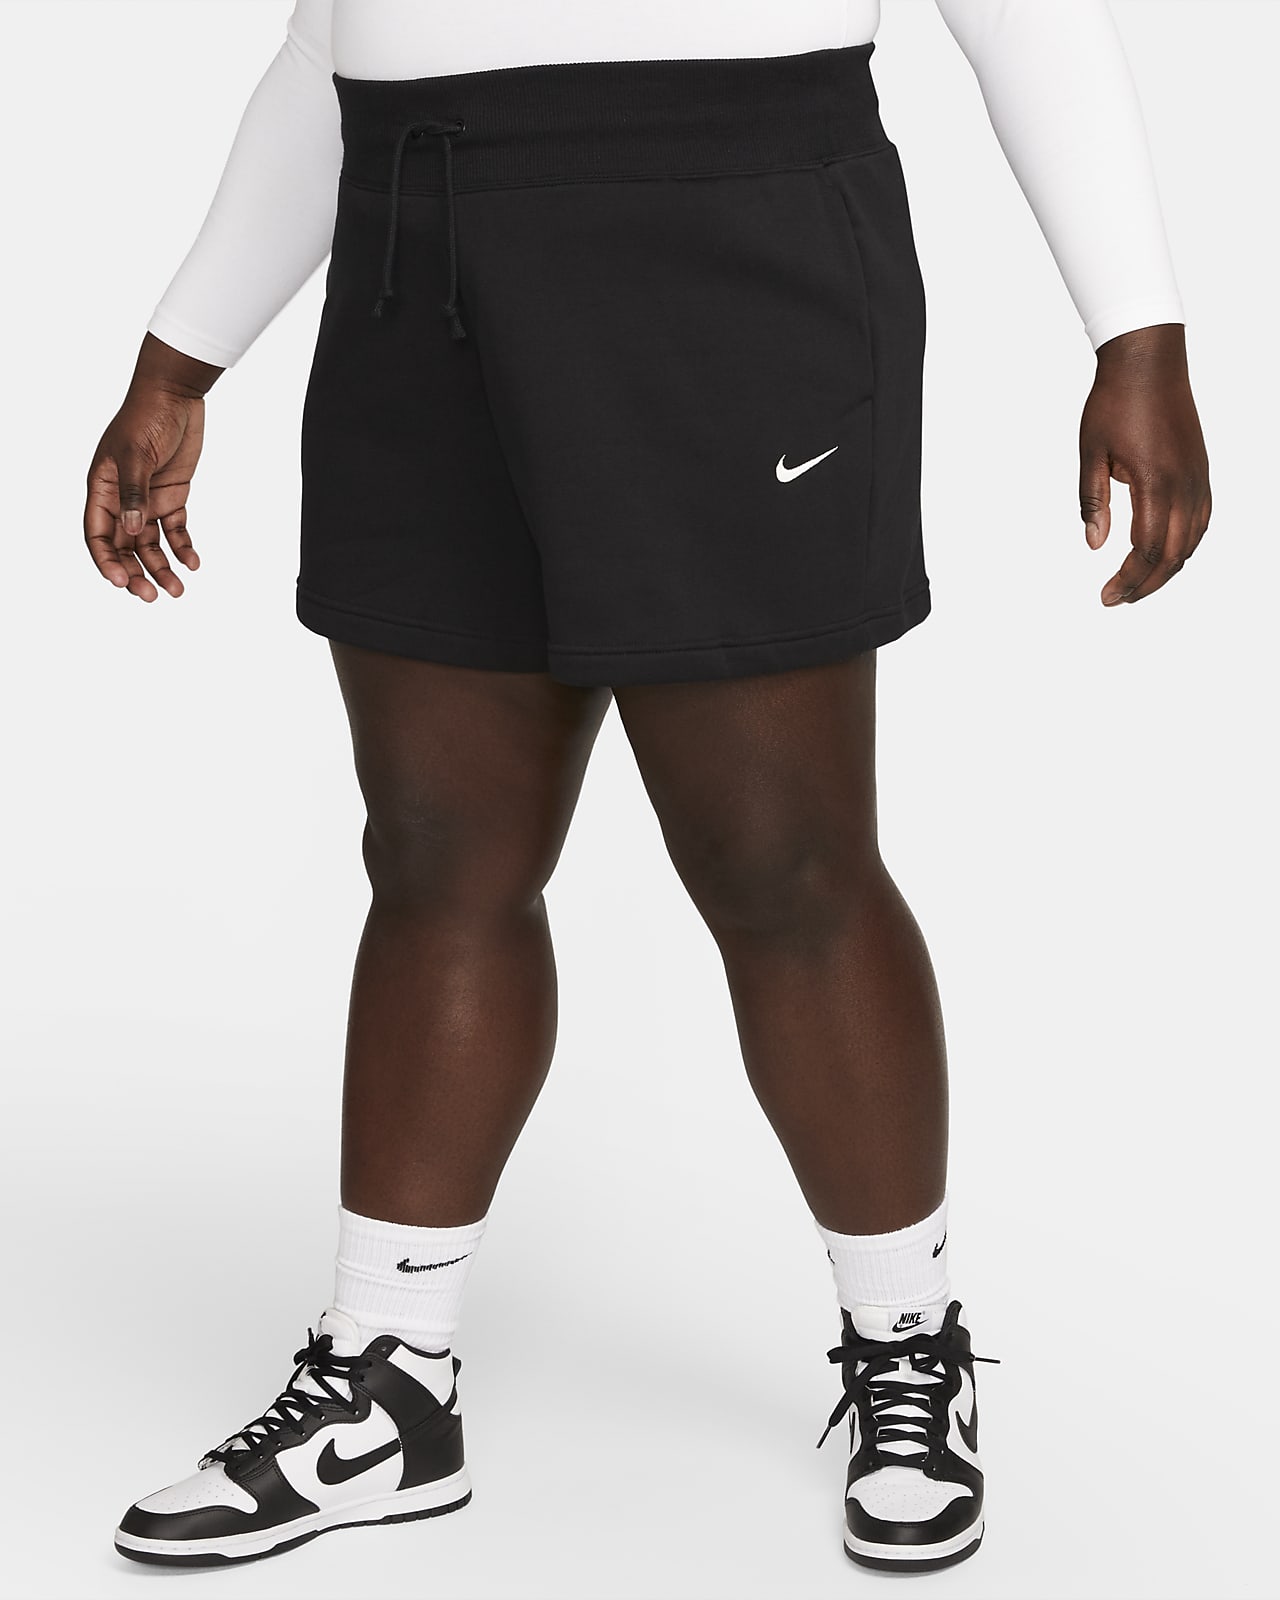 Γυναικείο ψηλόμεσο σορτς σε ριχτή γραμμή Nike Sportswear Phoenix Fleece (μεγάλα μεγέθη)